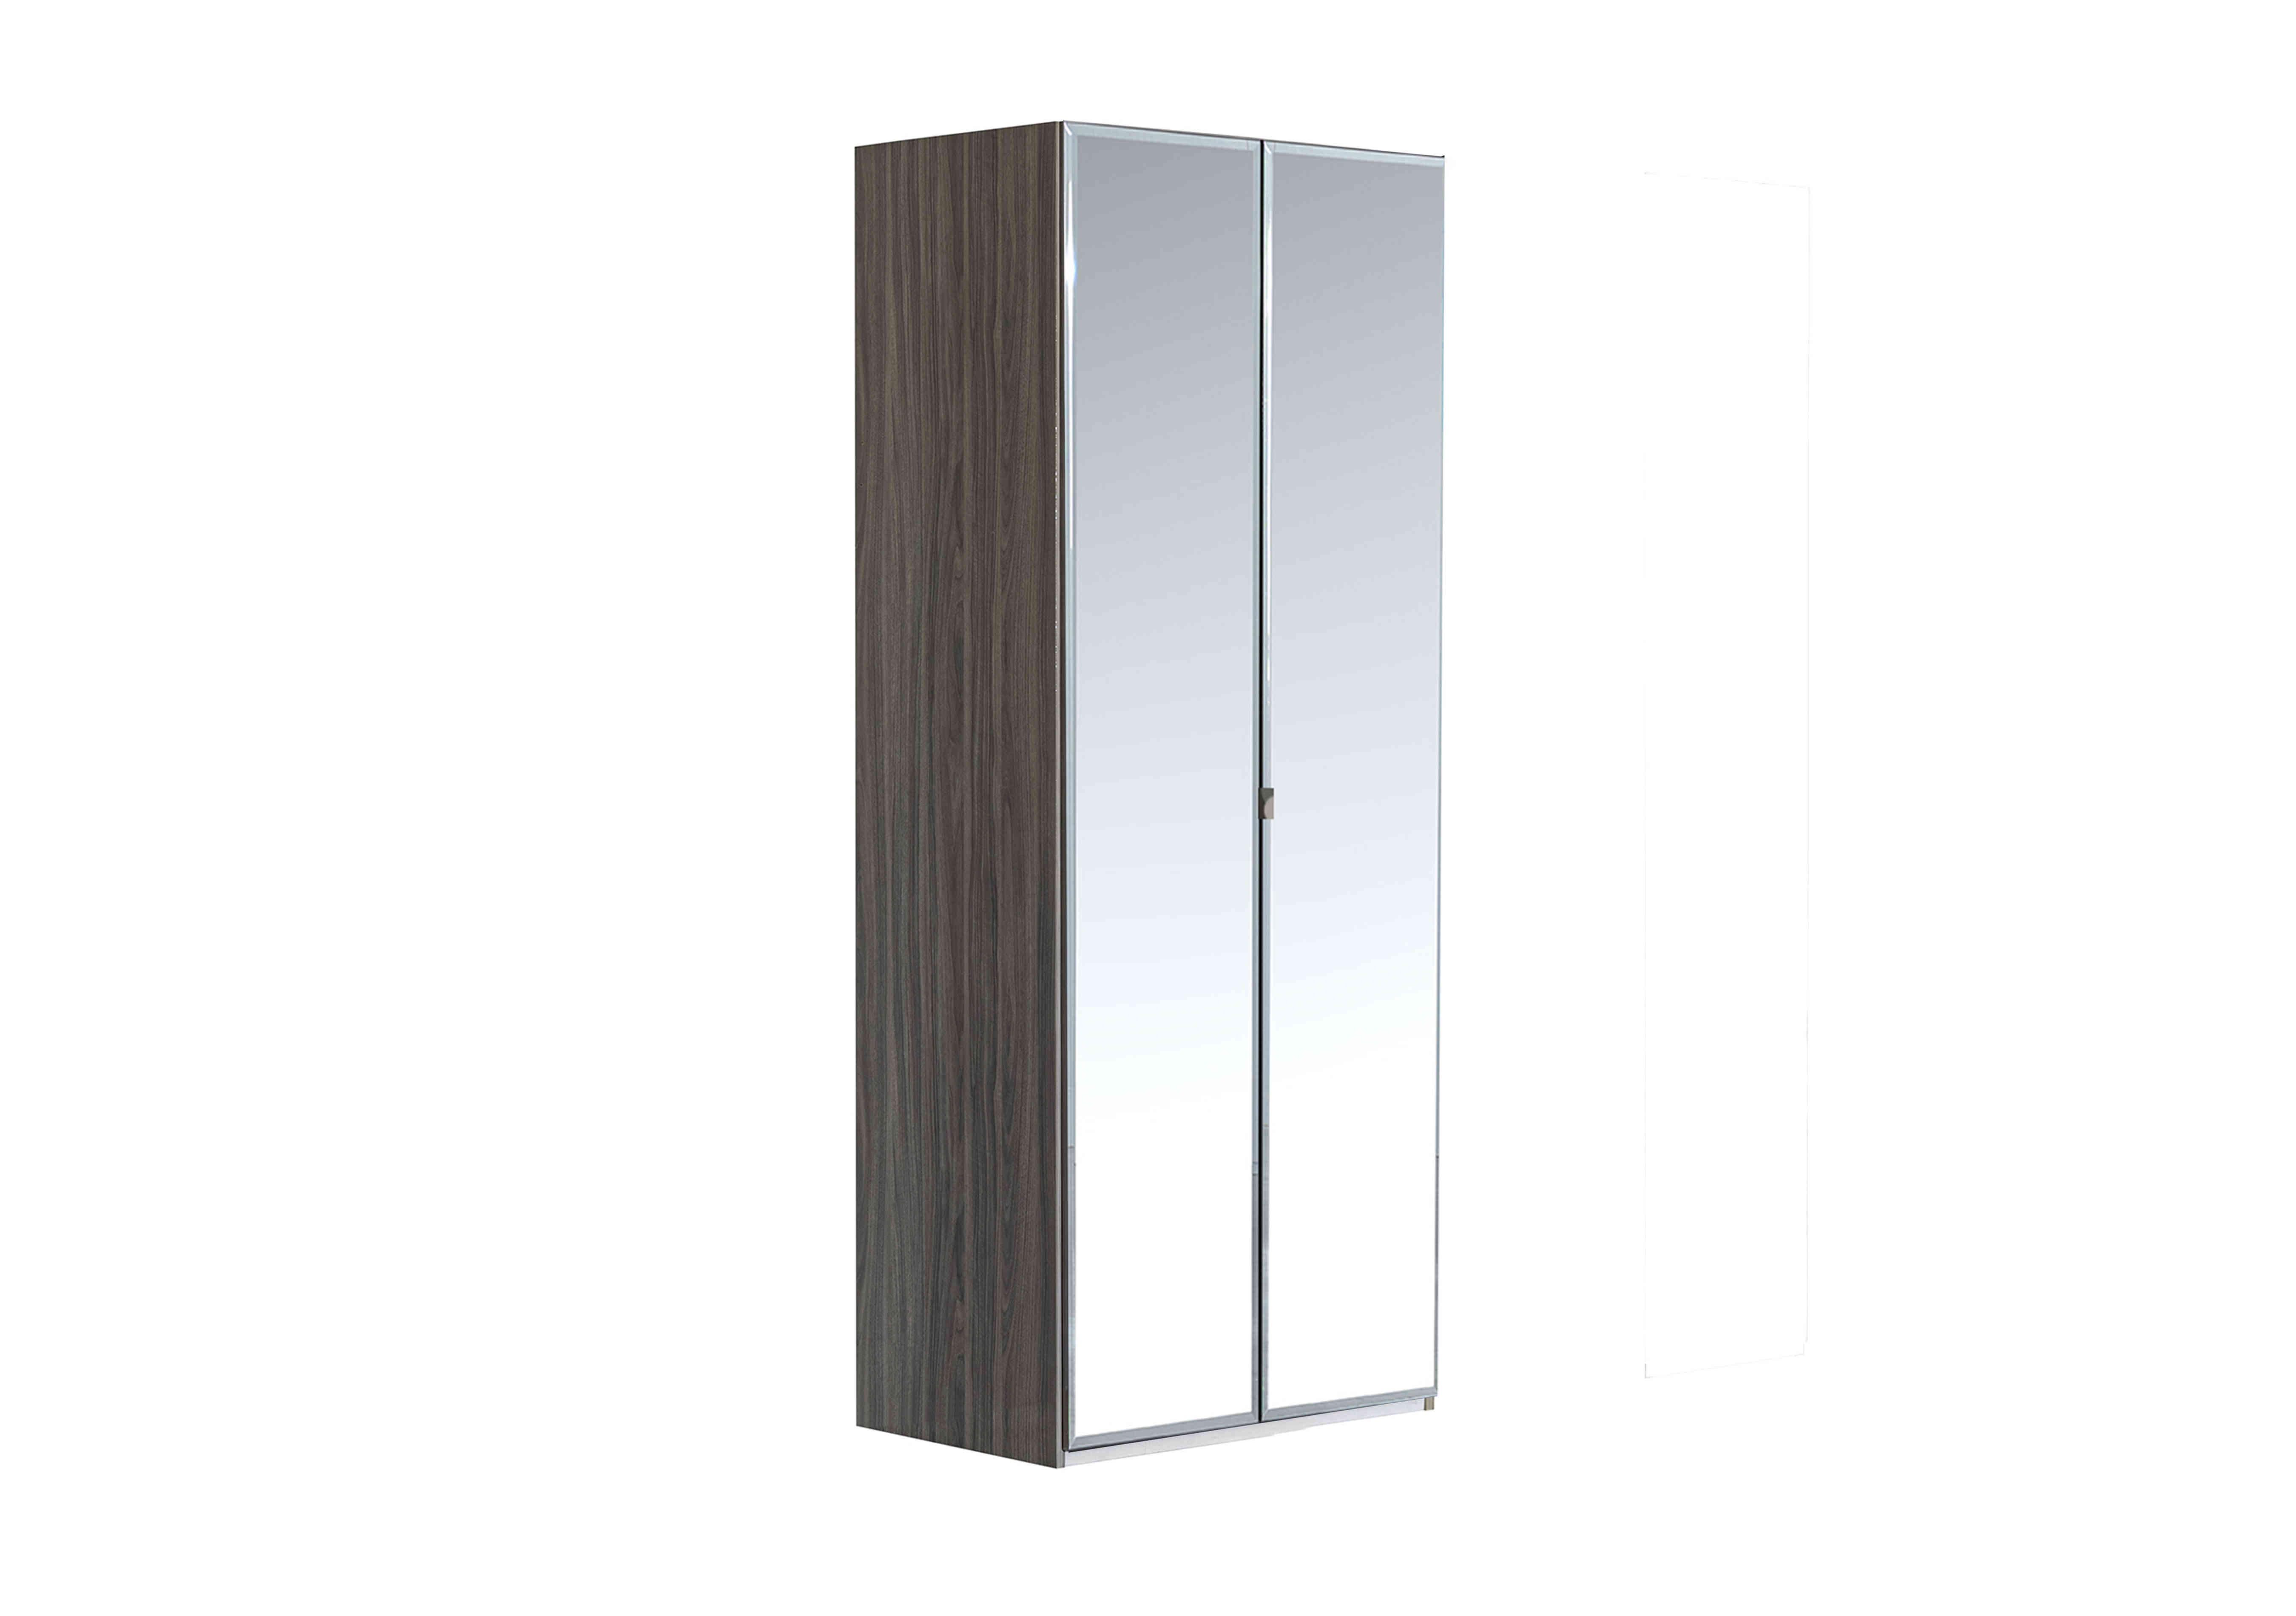 Venezia 2 Door Wardrobe with Mirror Doors in Grey on Furniture Village